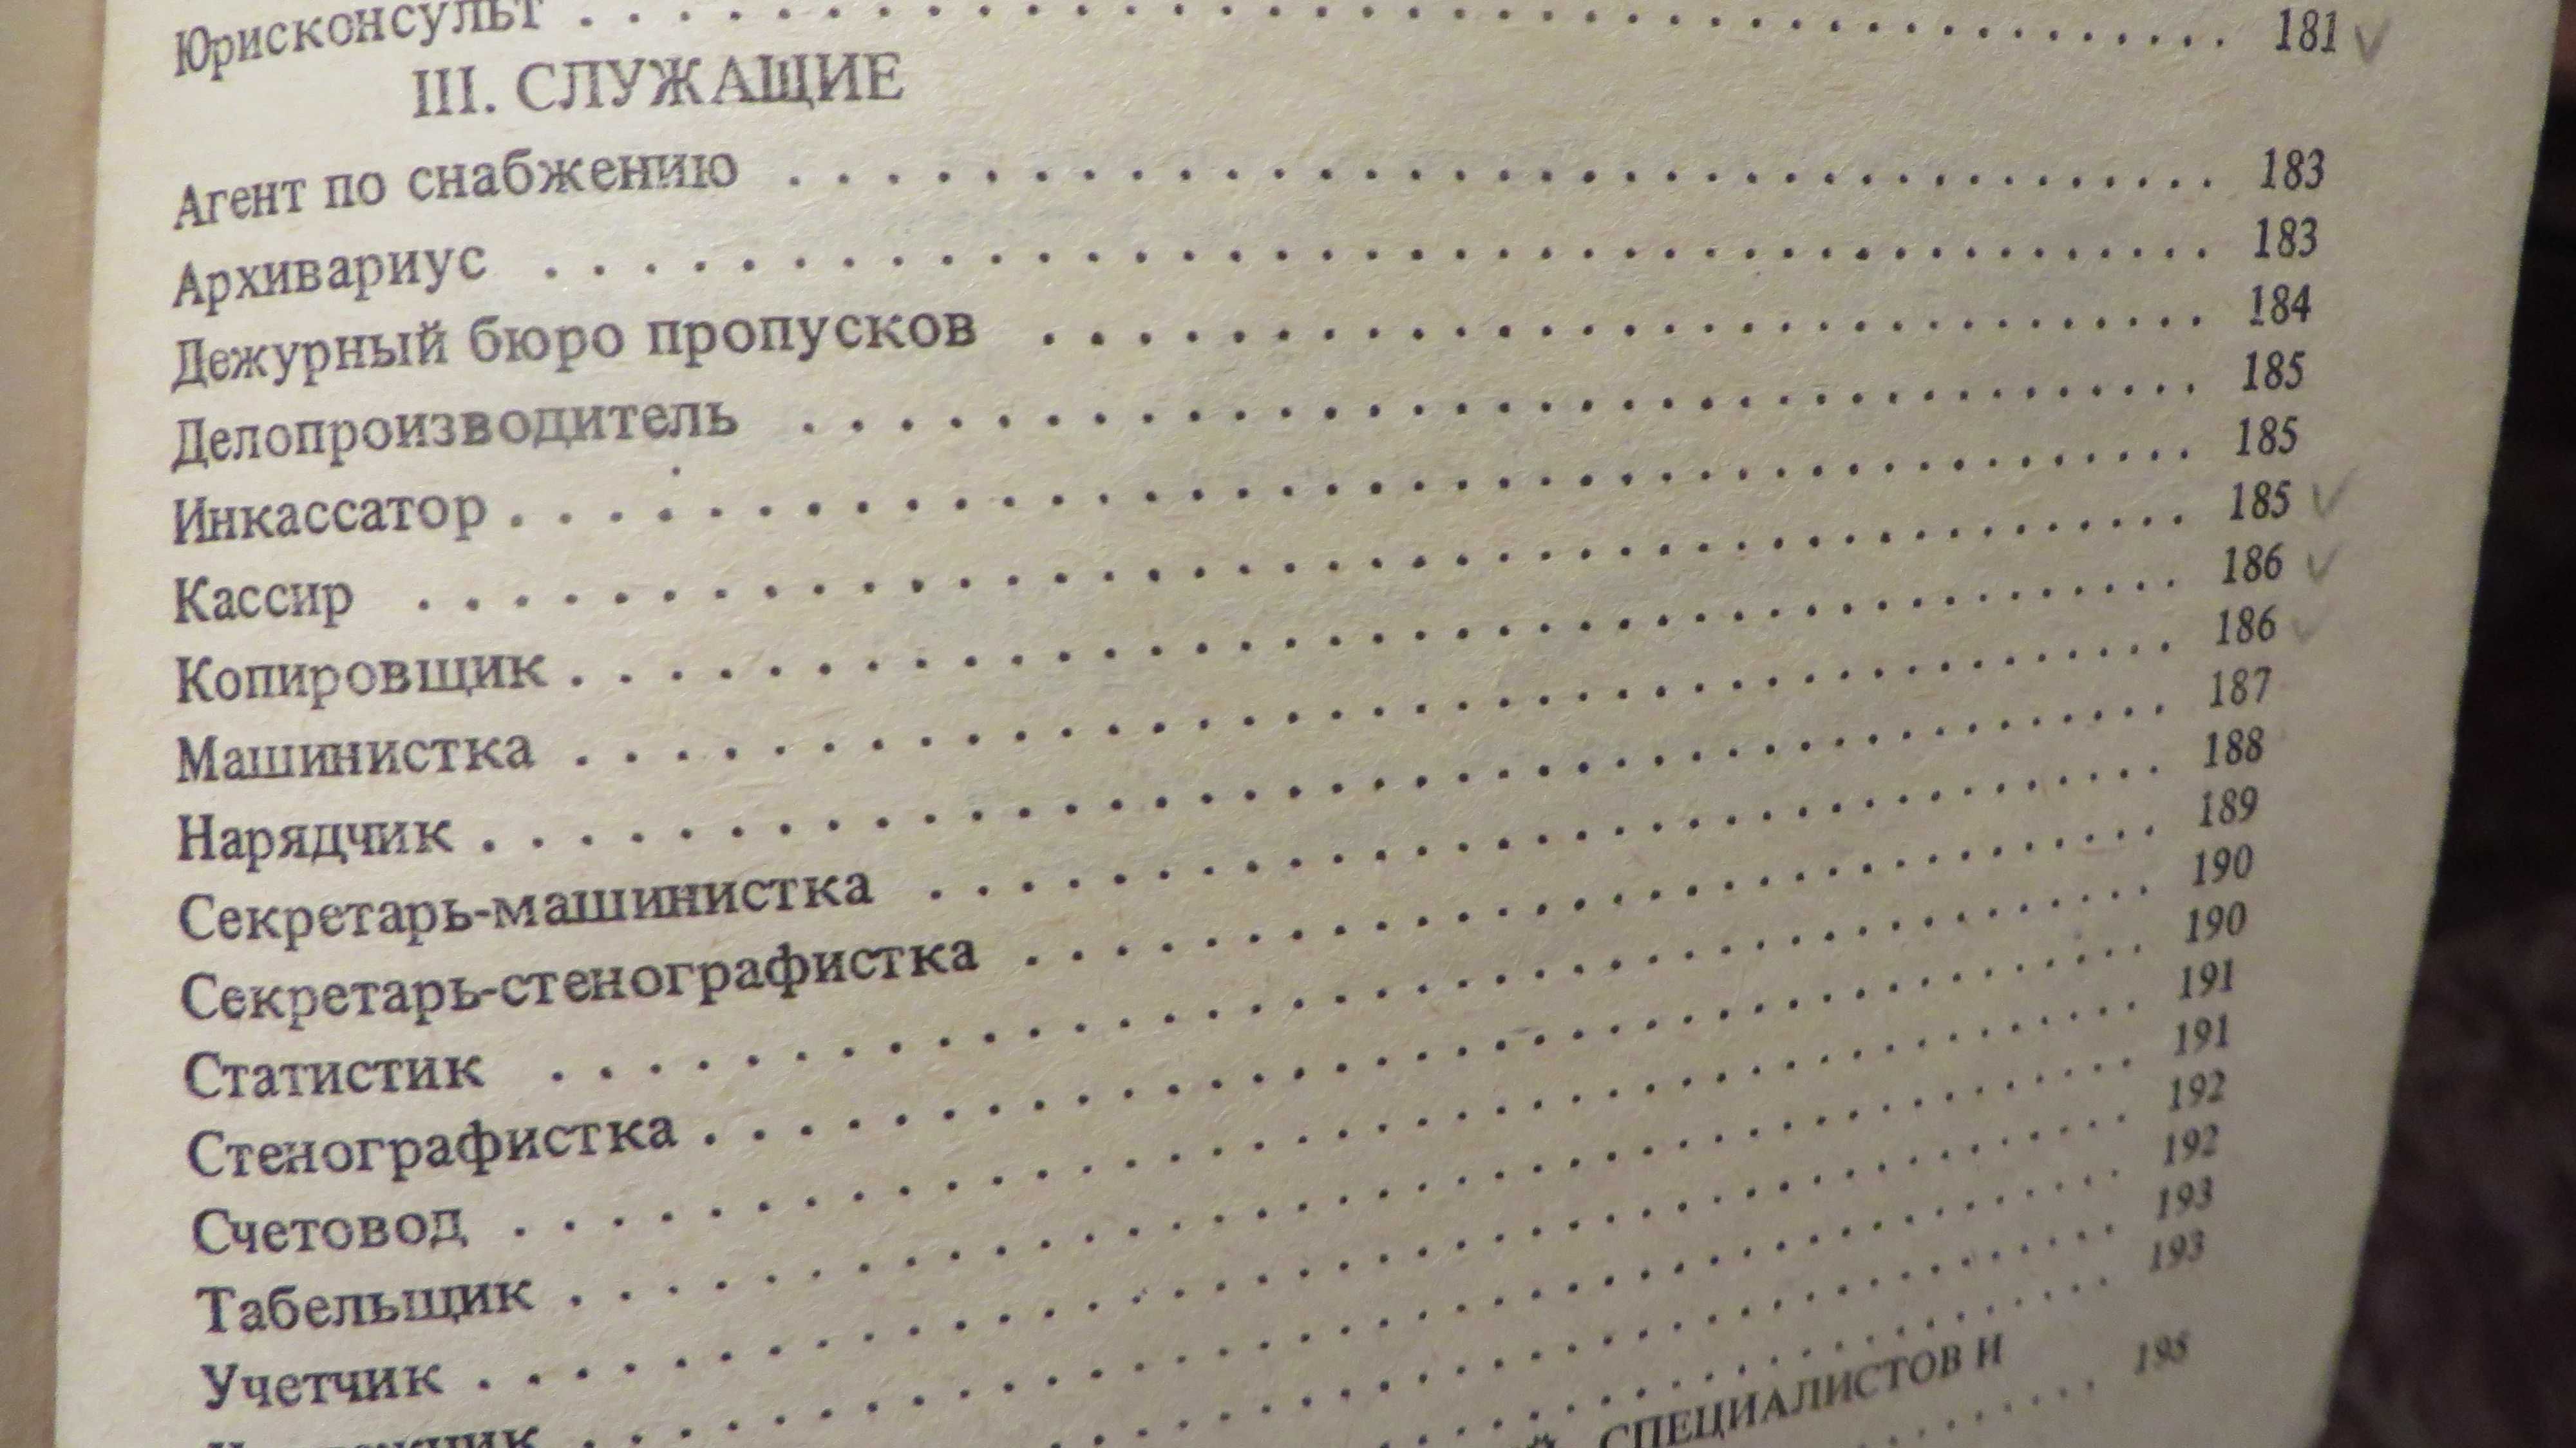 книга Квалификационный справочник должностей руководителей 1986г